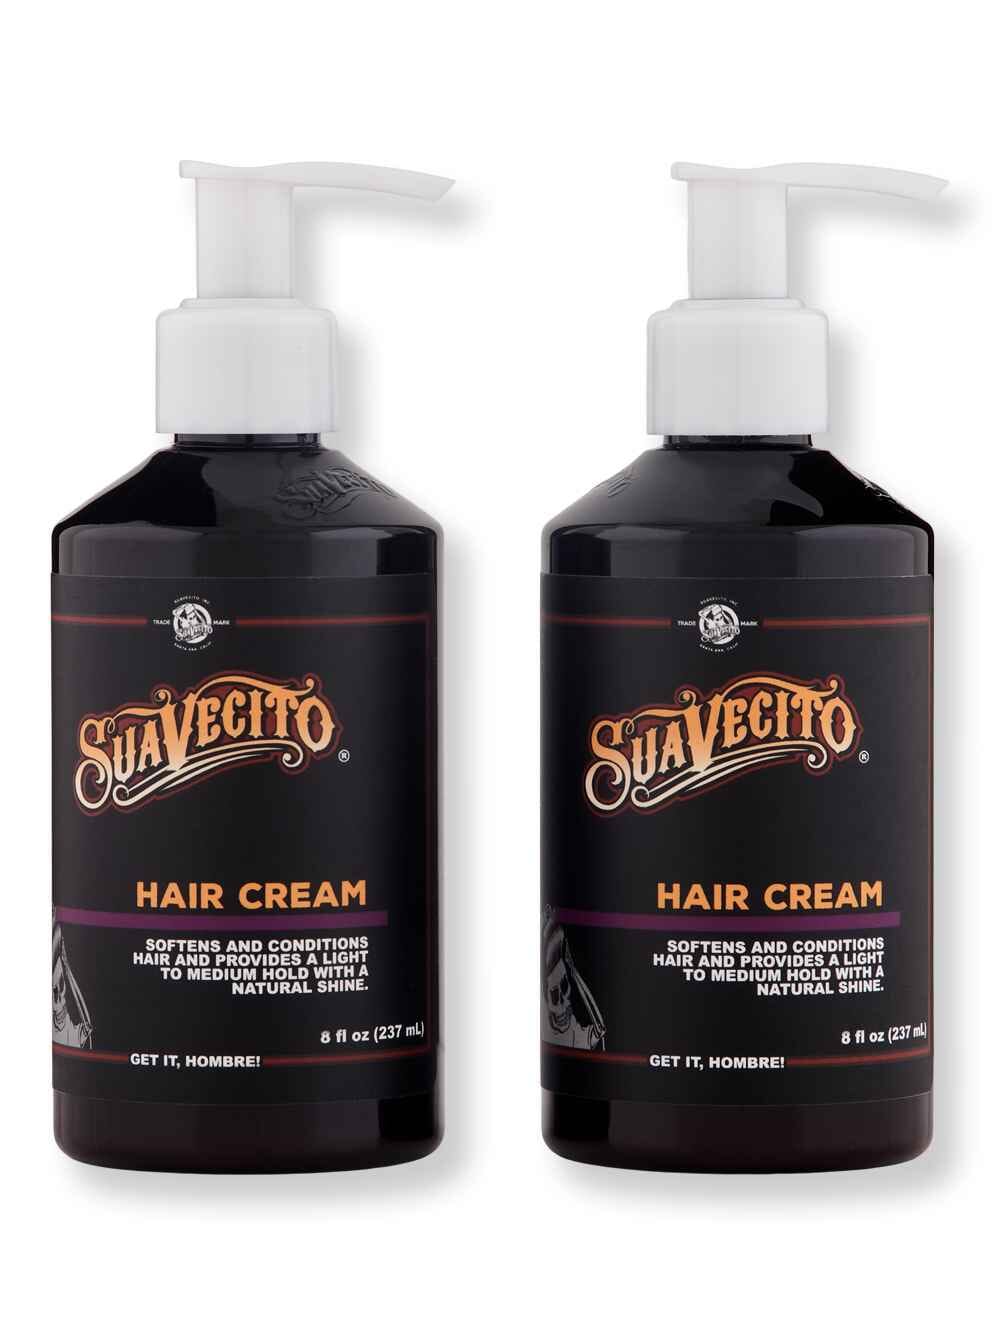 Suavecito Suavecito Hair Cream 2 Ct 8 oz237 ml Styling Treatments 